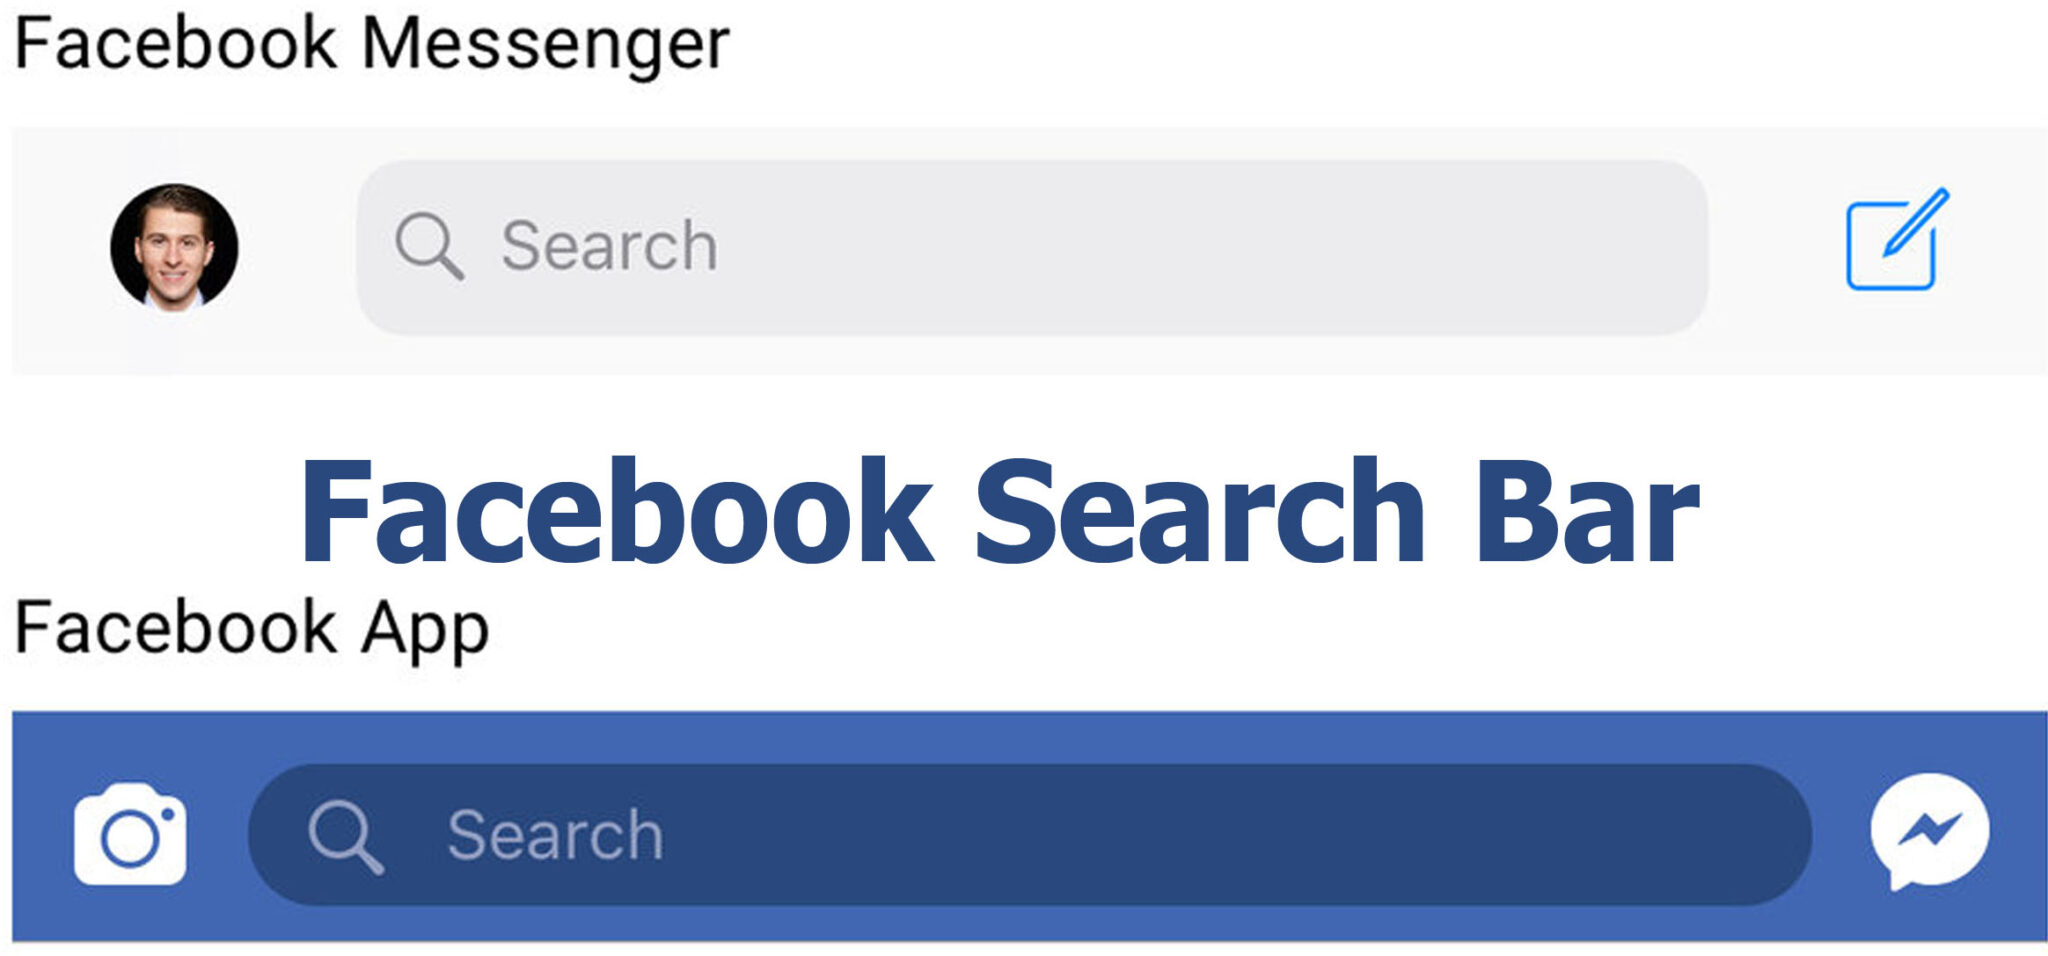 Facebook Search Bar - Search Bar on Facebook